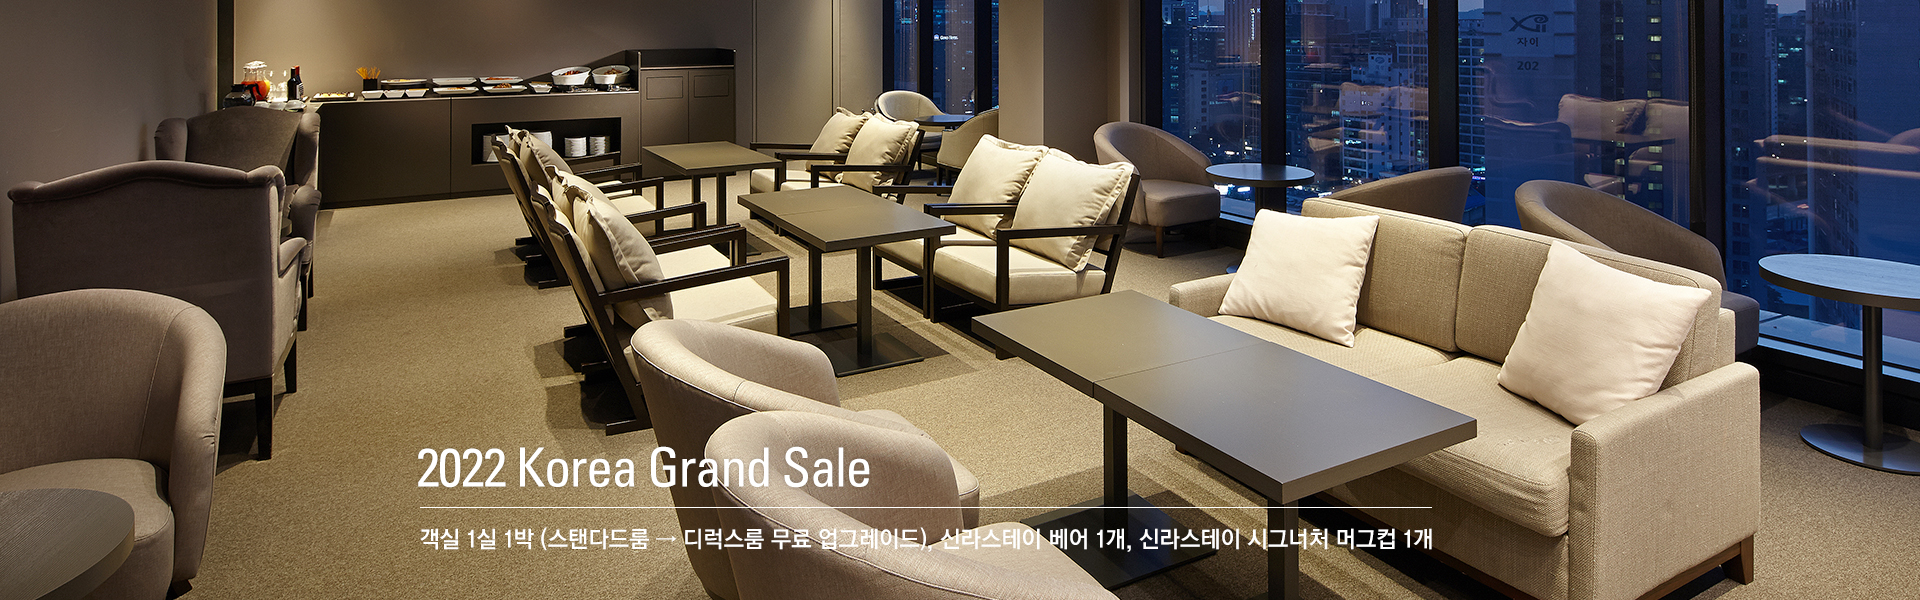 2022 Korea Grand Sale